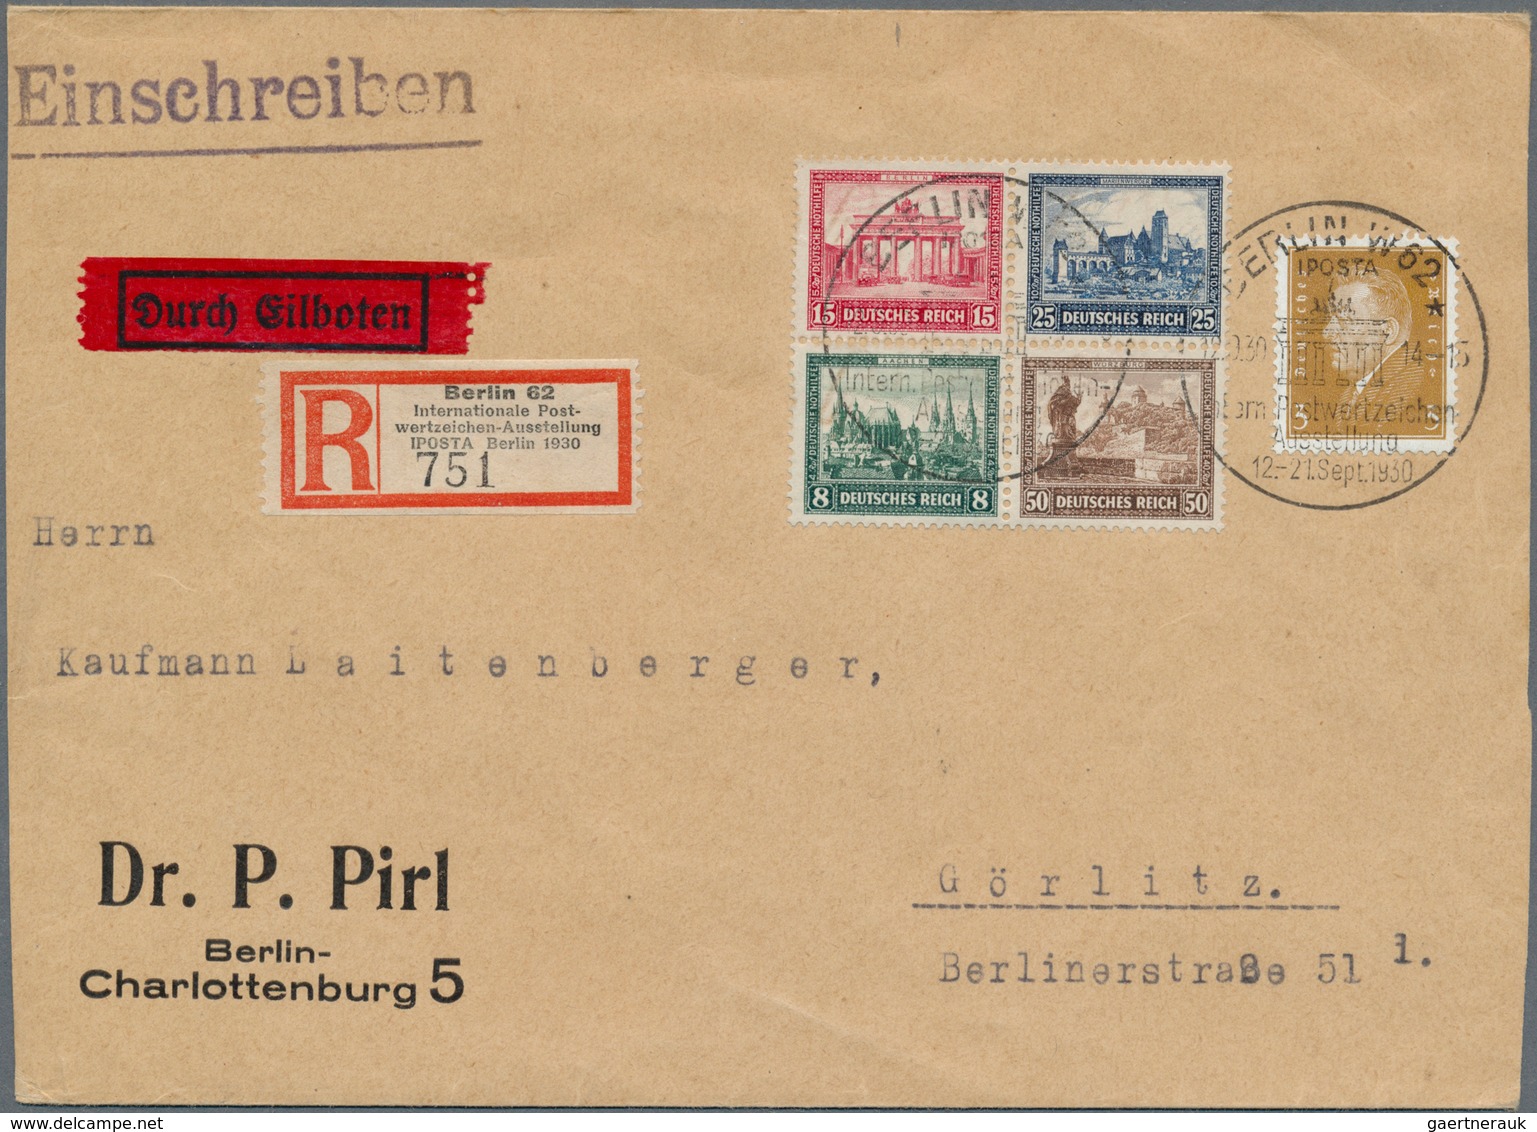 Deutsches Reich - Weimar: 1923-1932, schöne Partie mit 120 zumeist besseren Briefen und Belegen, dab